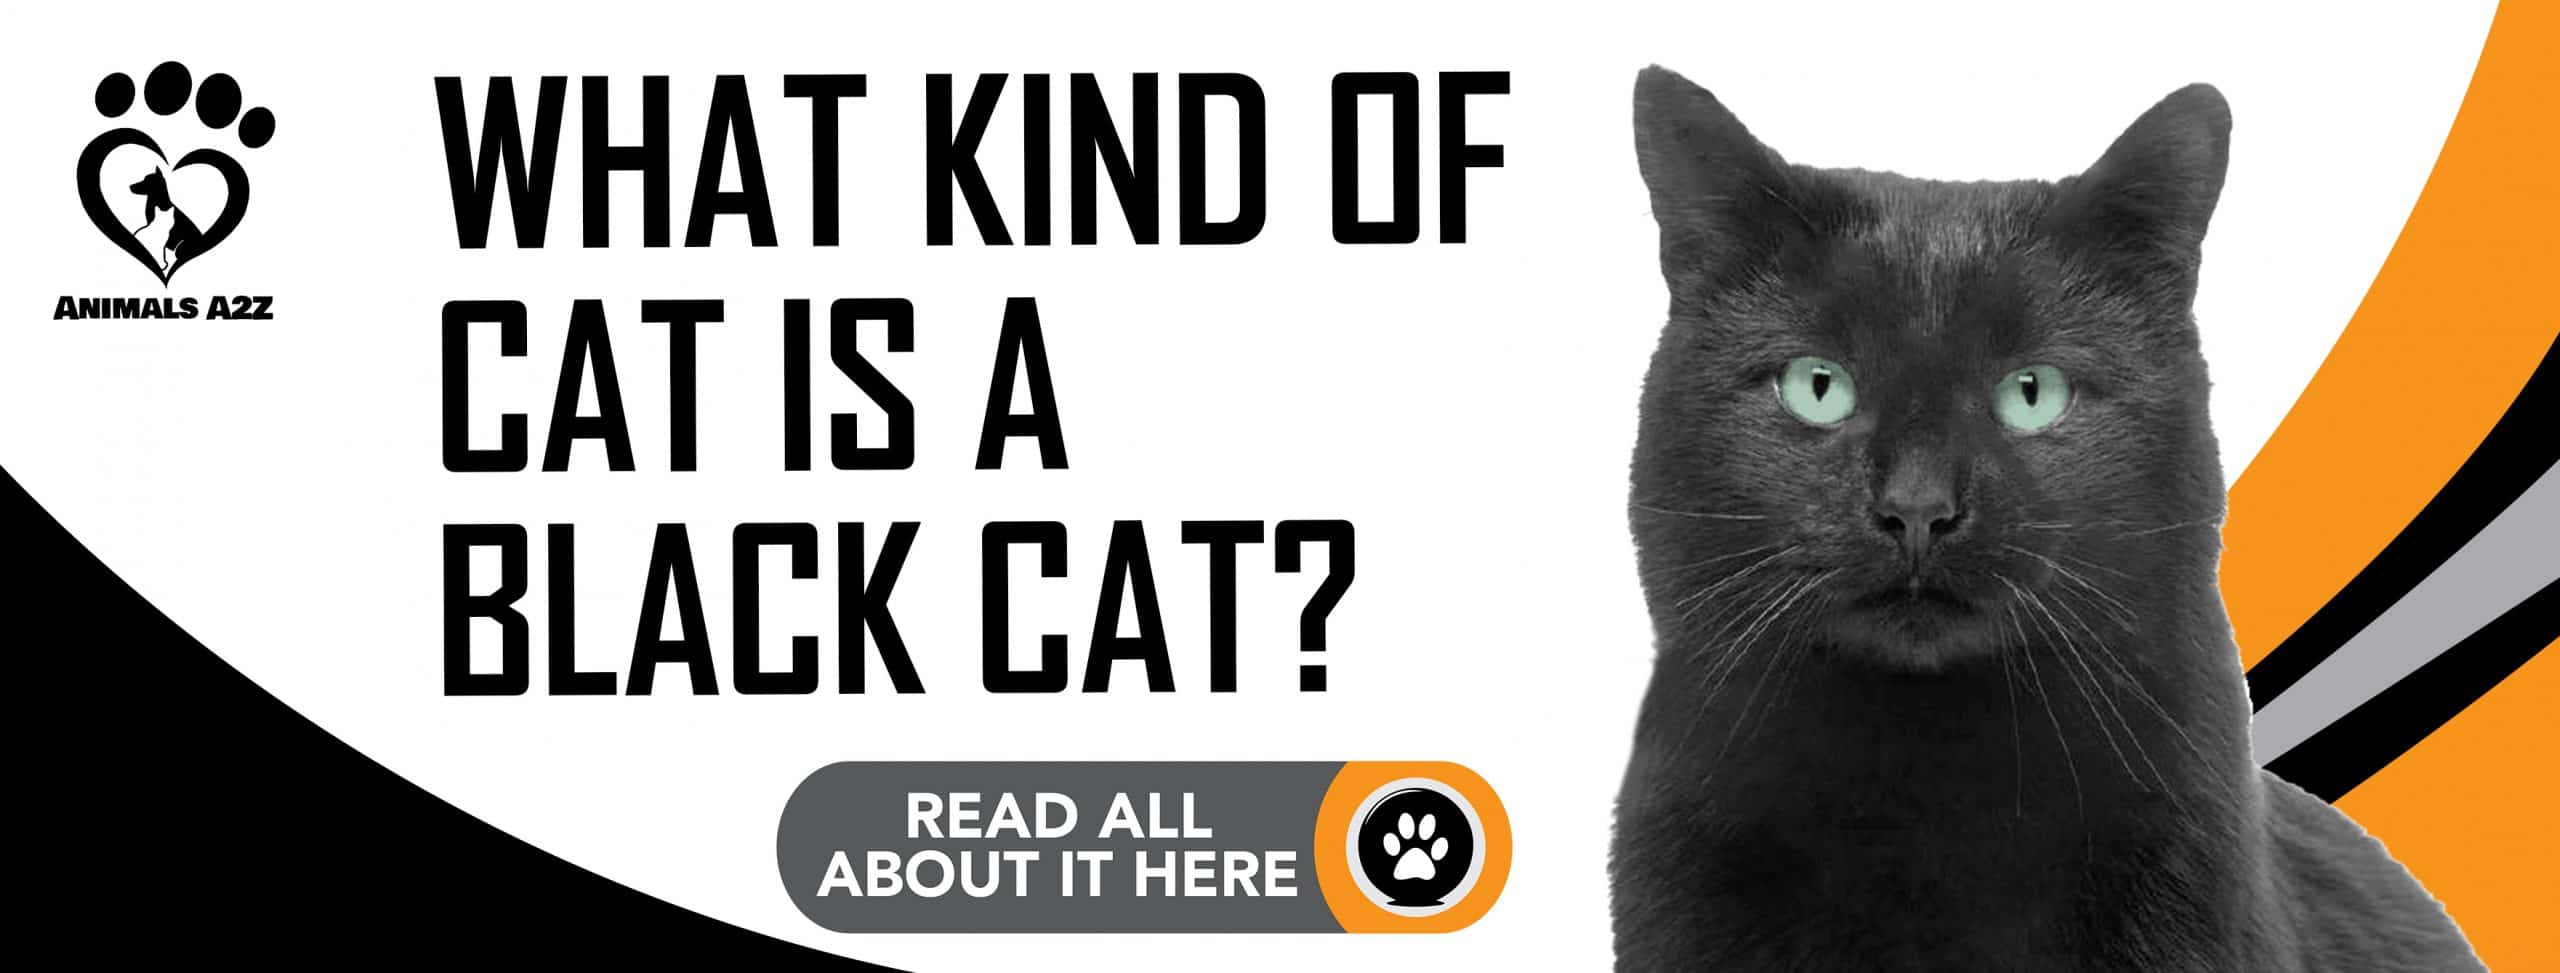 Welche Art von Katze ist eine schwarze Katze?